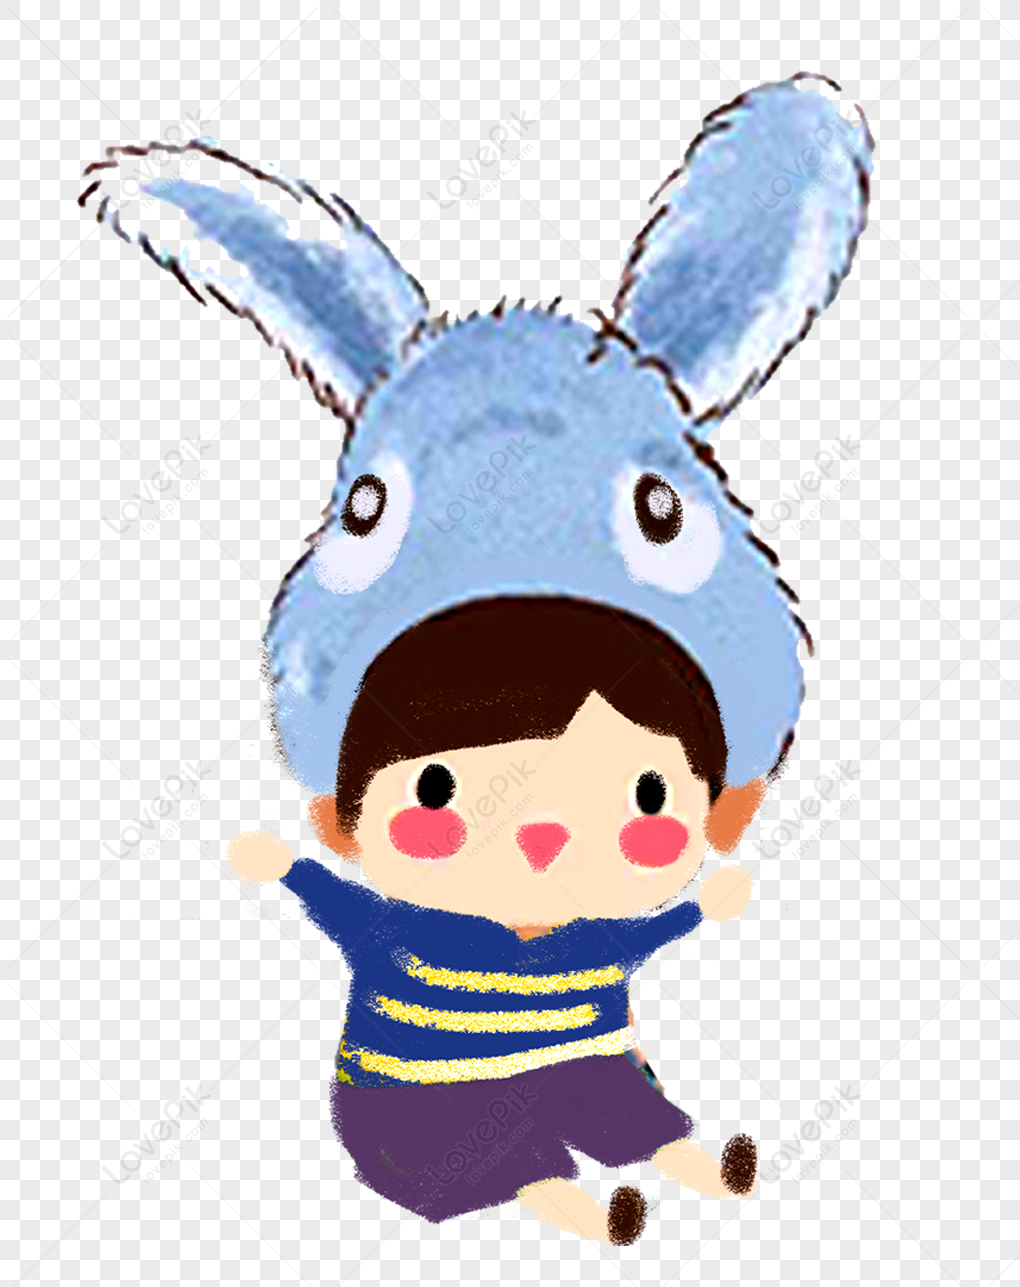 Cậu bé mũ thỏ: Với những hình ảnh đáng yêu của cậu bé mũ thỏ, bạn sẽ được đắm mình trong một thế giới ảo diệu, đầy màu sắc và tràn đầy niềm vui. Hãy cùng đưa chú thỏ đáng yêu đến với cuộc sống của bạn.